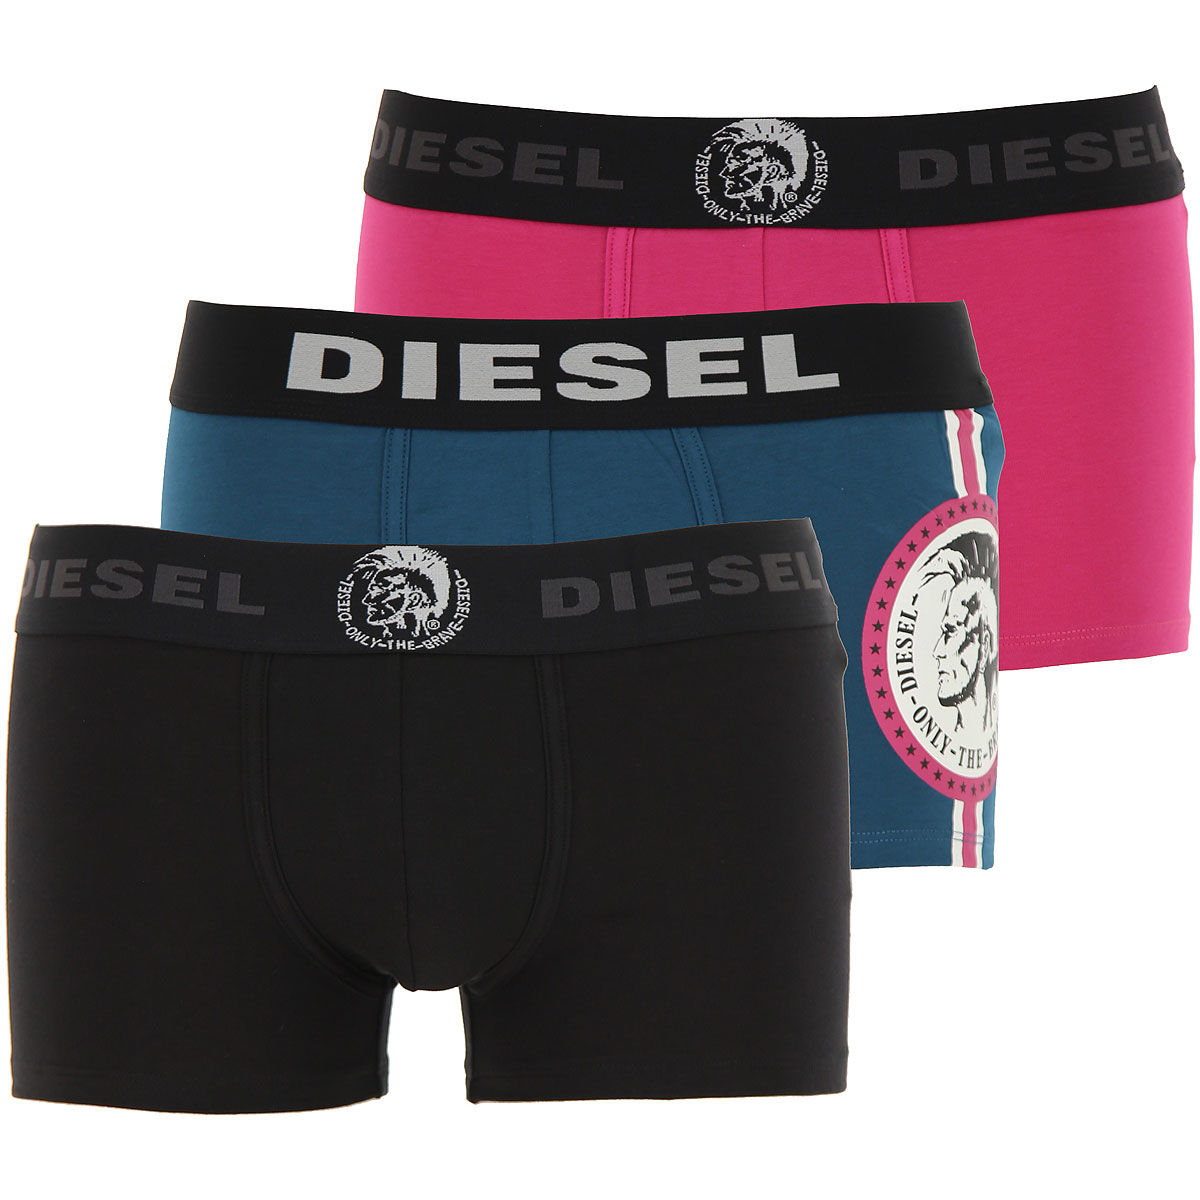 Diesel Boxer Shorts für Herren, Unterhose, Short, Boxer Günstig im Sale, 3 Pack, Schwarz, Baumwolle, 2017, L M S XL